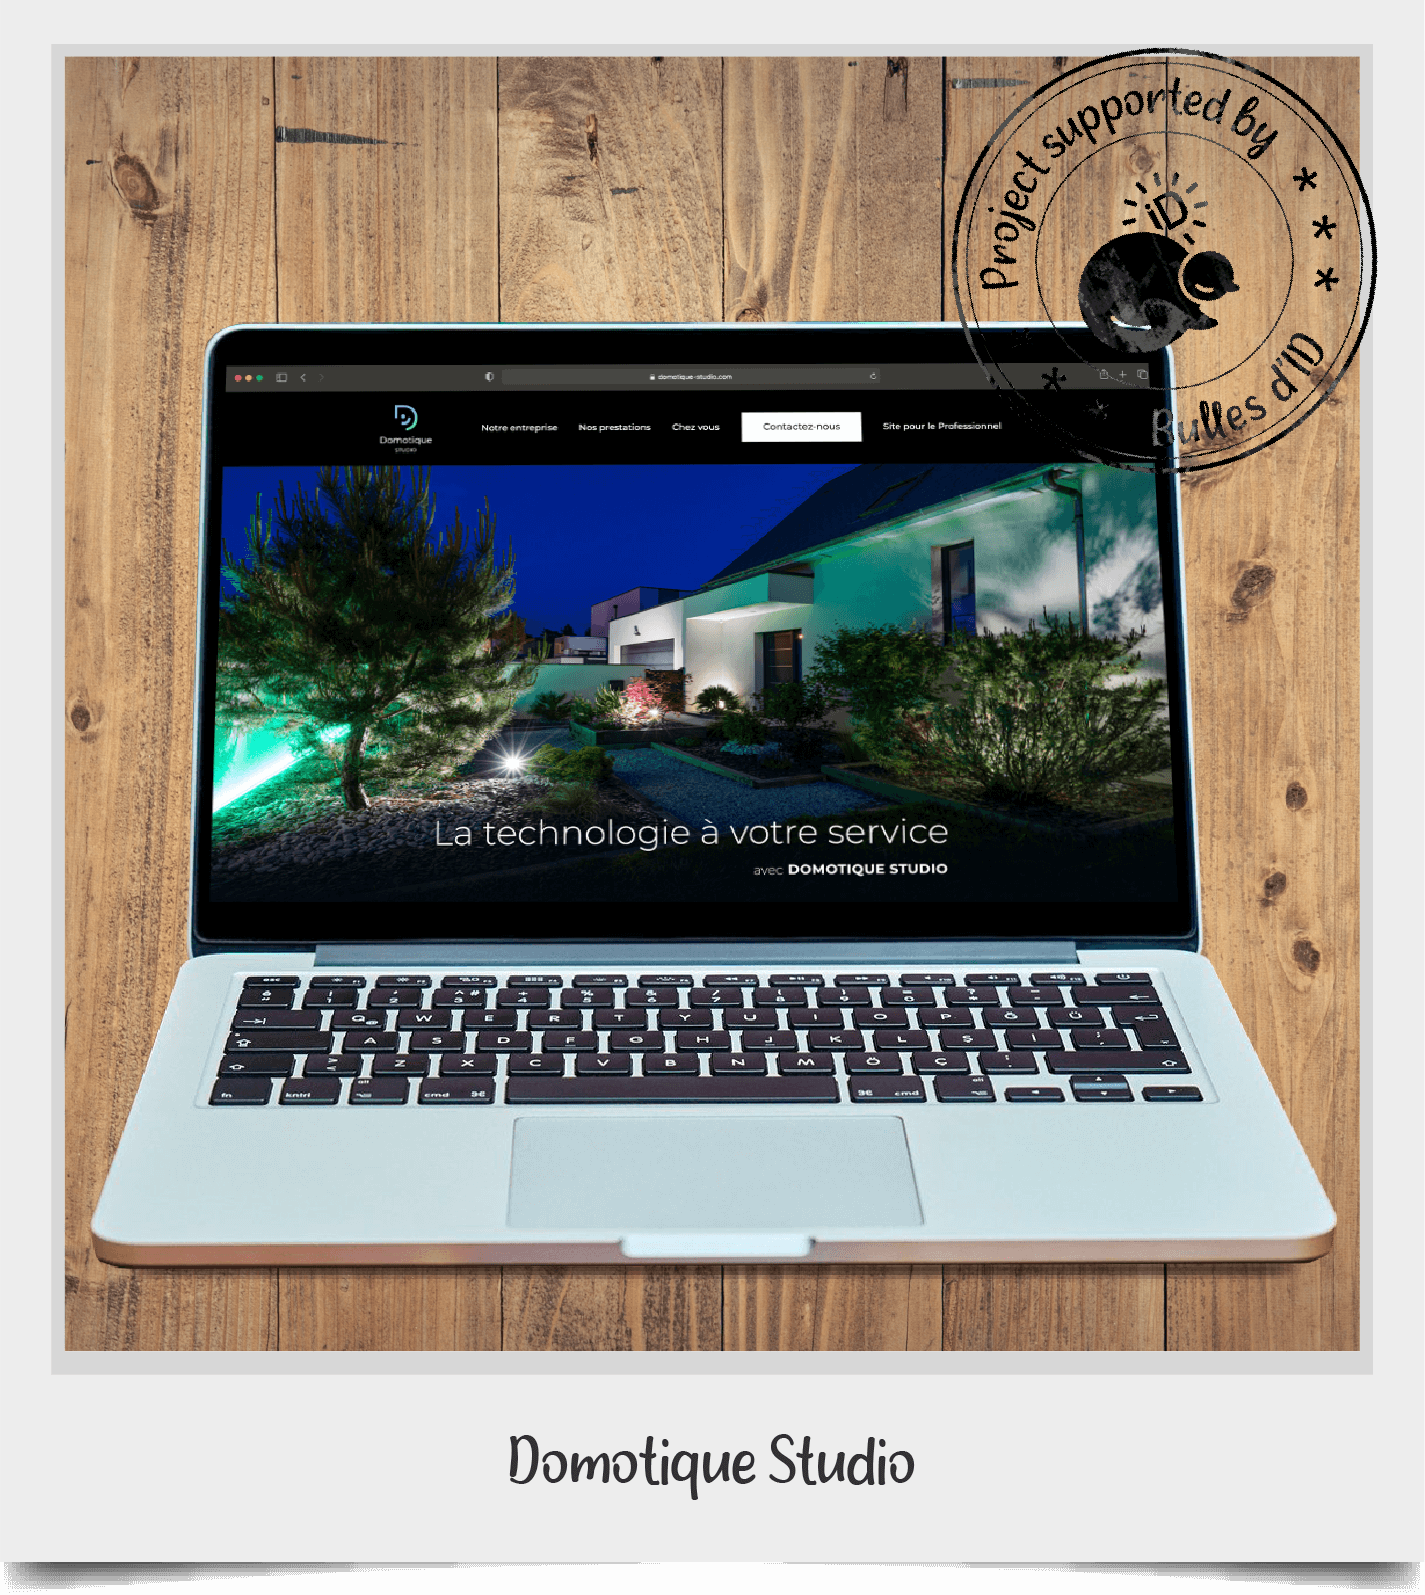 Polaroid Domotique Studio website